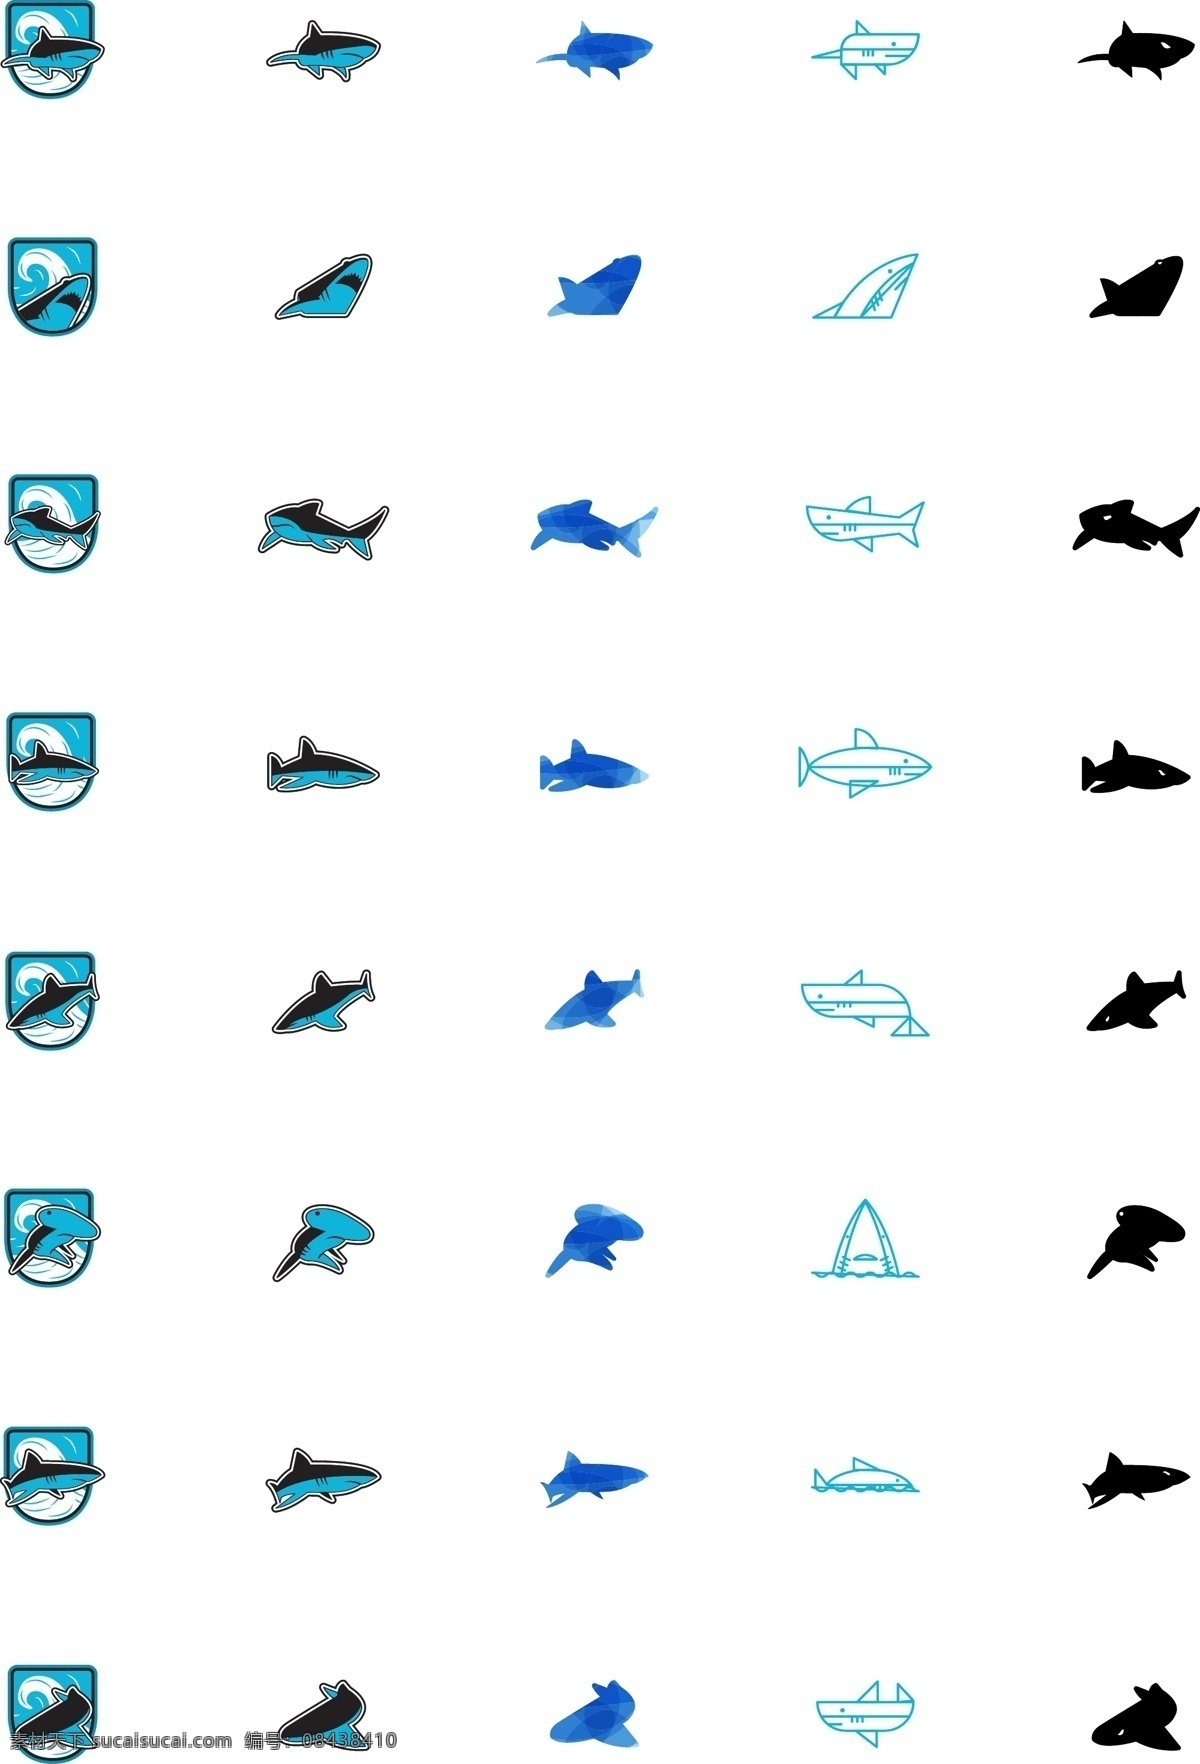 鲨鱼图标 简笔画 抽象 素描 轮廓 鲨鱼 动物 海洋 游动 捕食 大白鲨 图标 logo web 界面设计 图标按钮